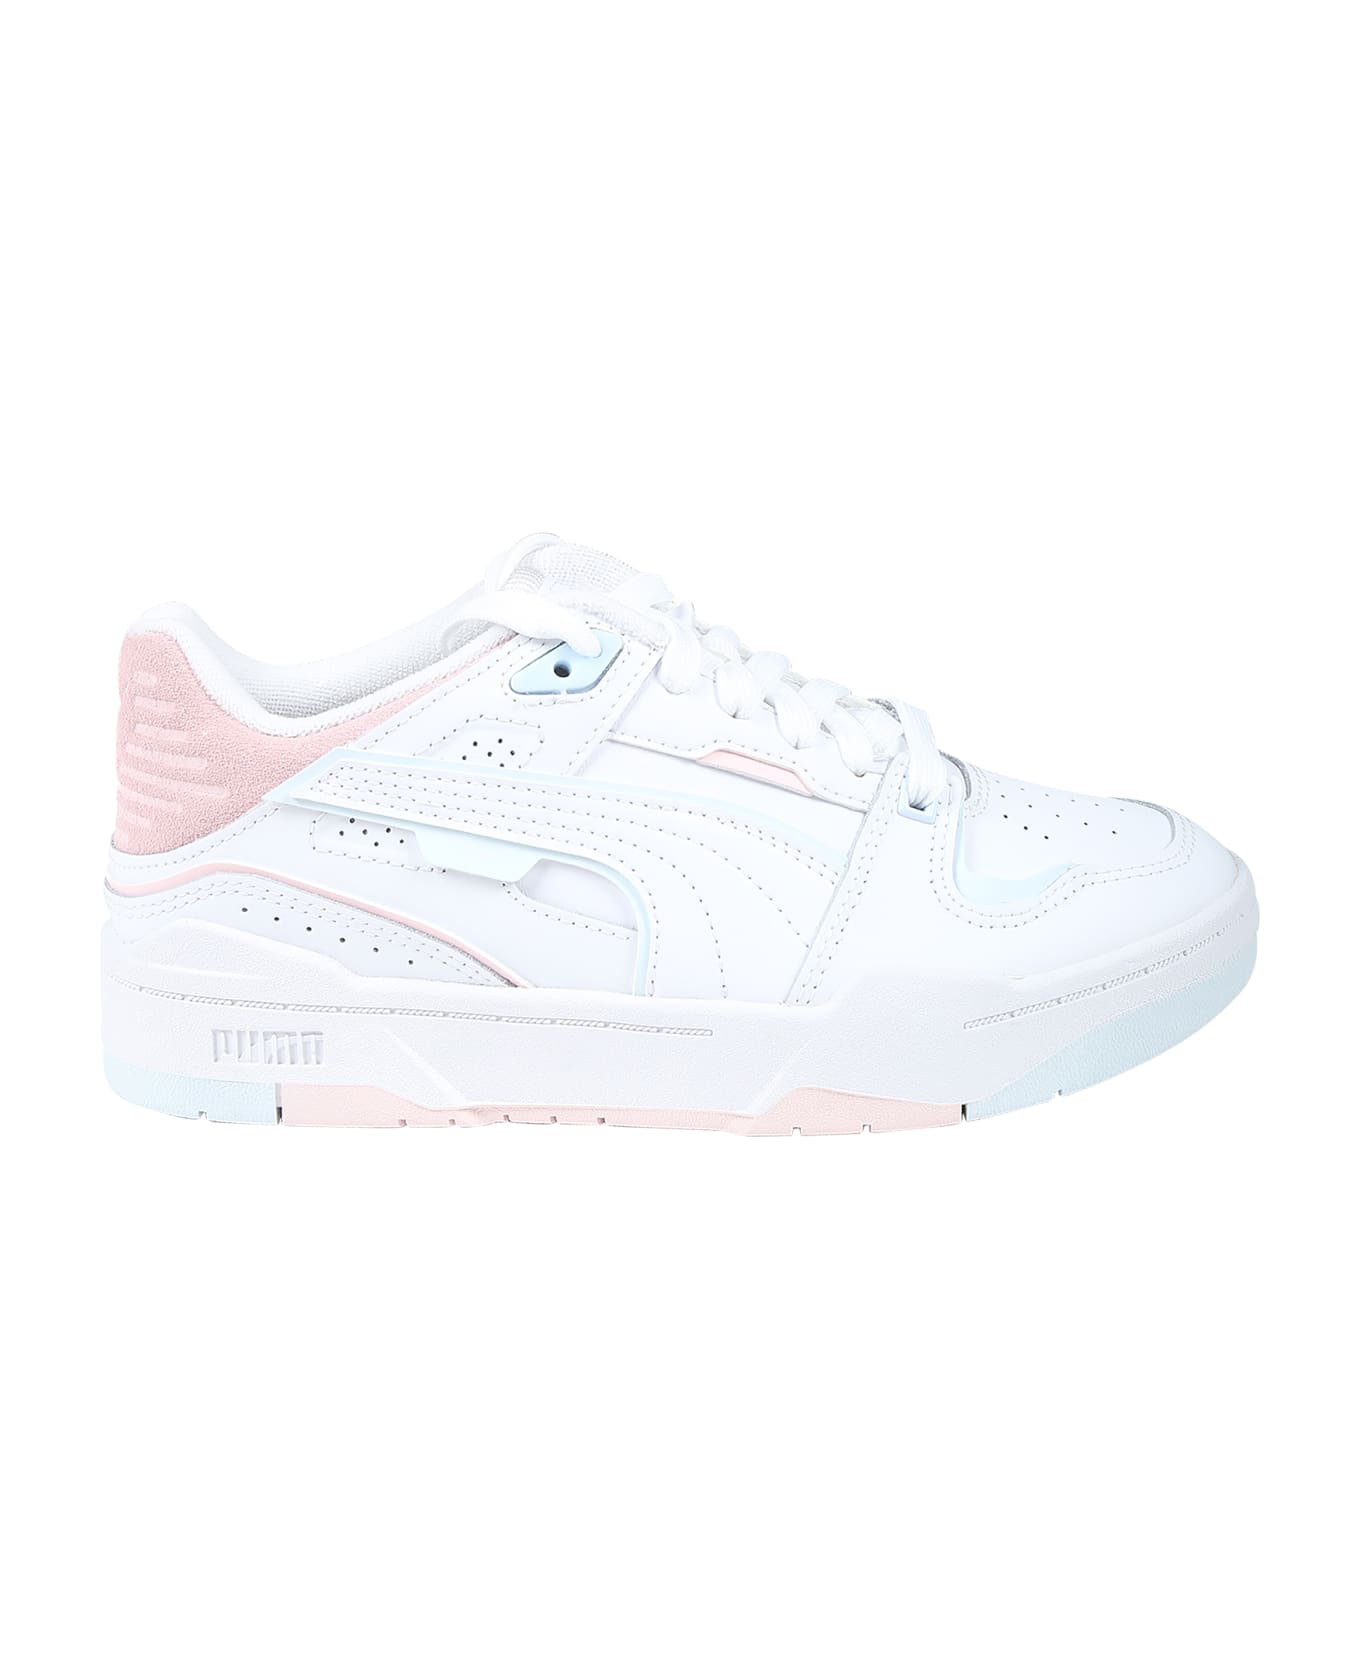 Puma White Slipstream Bball Jr Sneakers For Girl - White